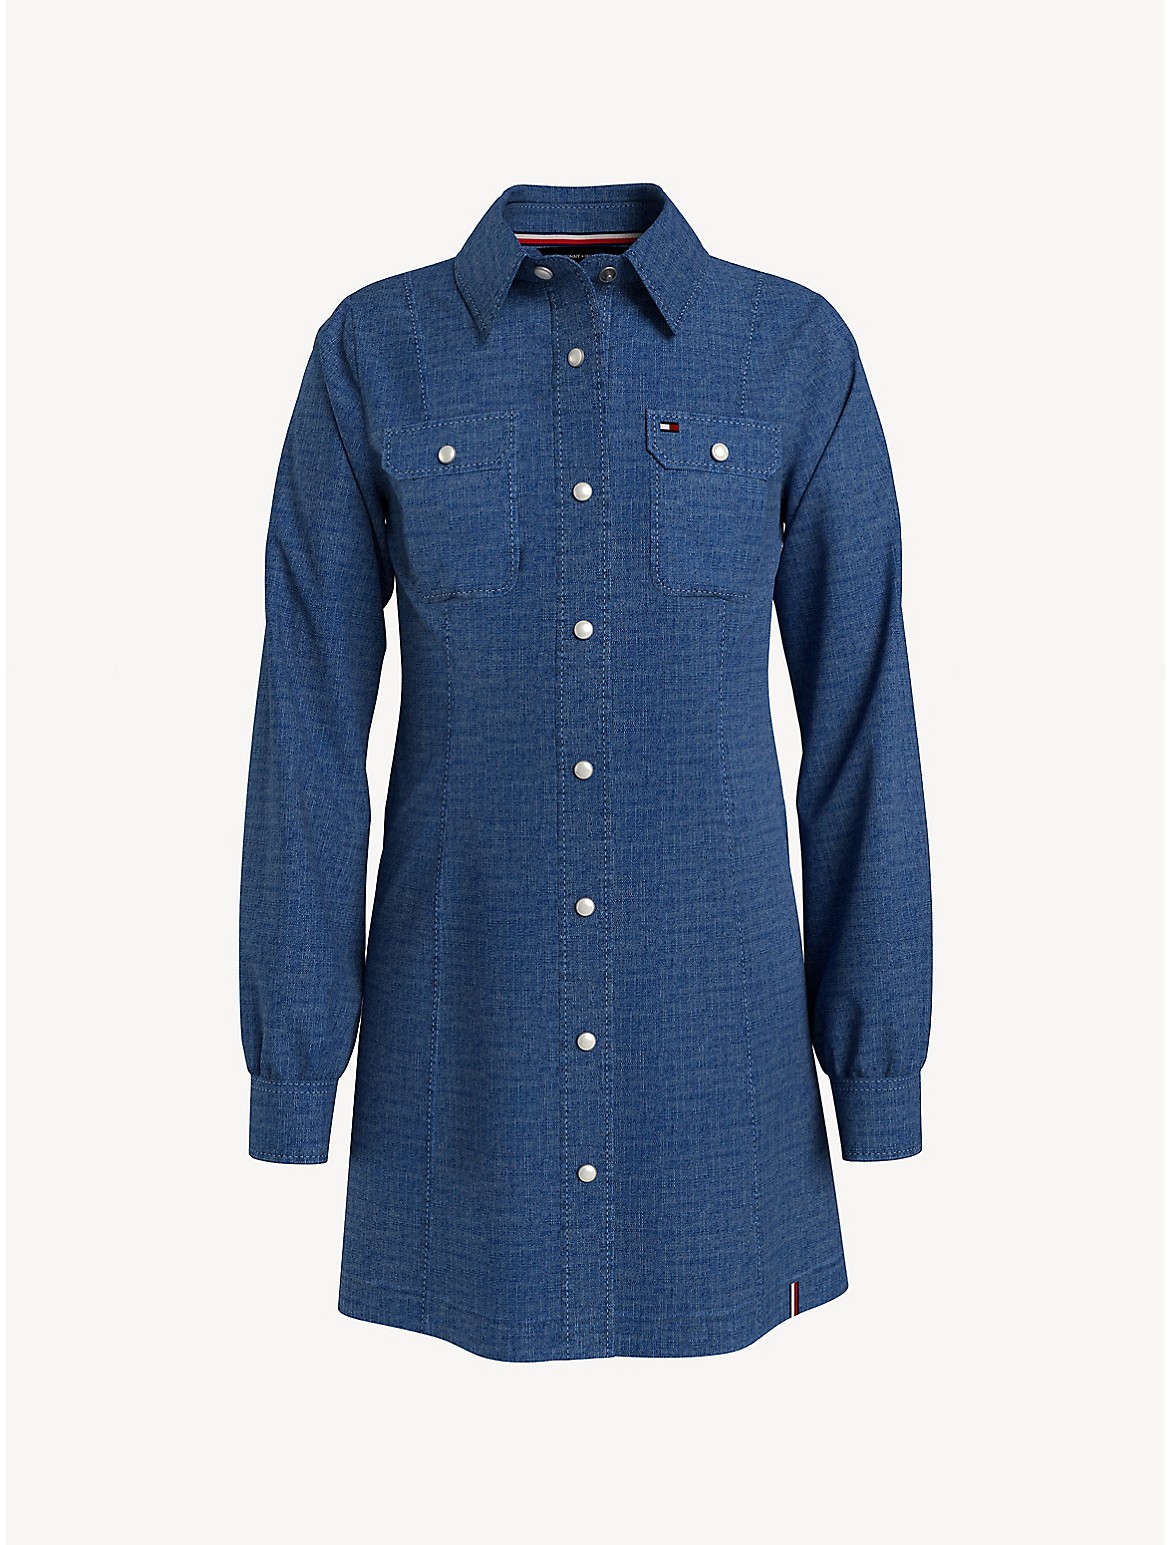 Tommy Hilfiger Girls' Kids' Denim Shirt Dress - Blue - 2